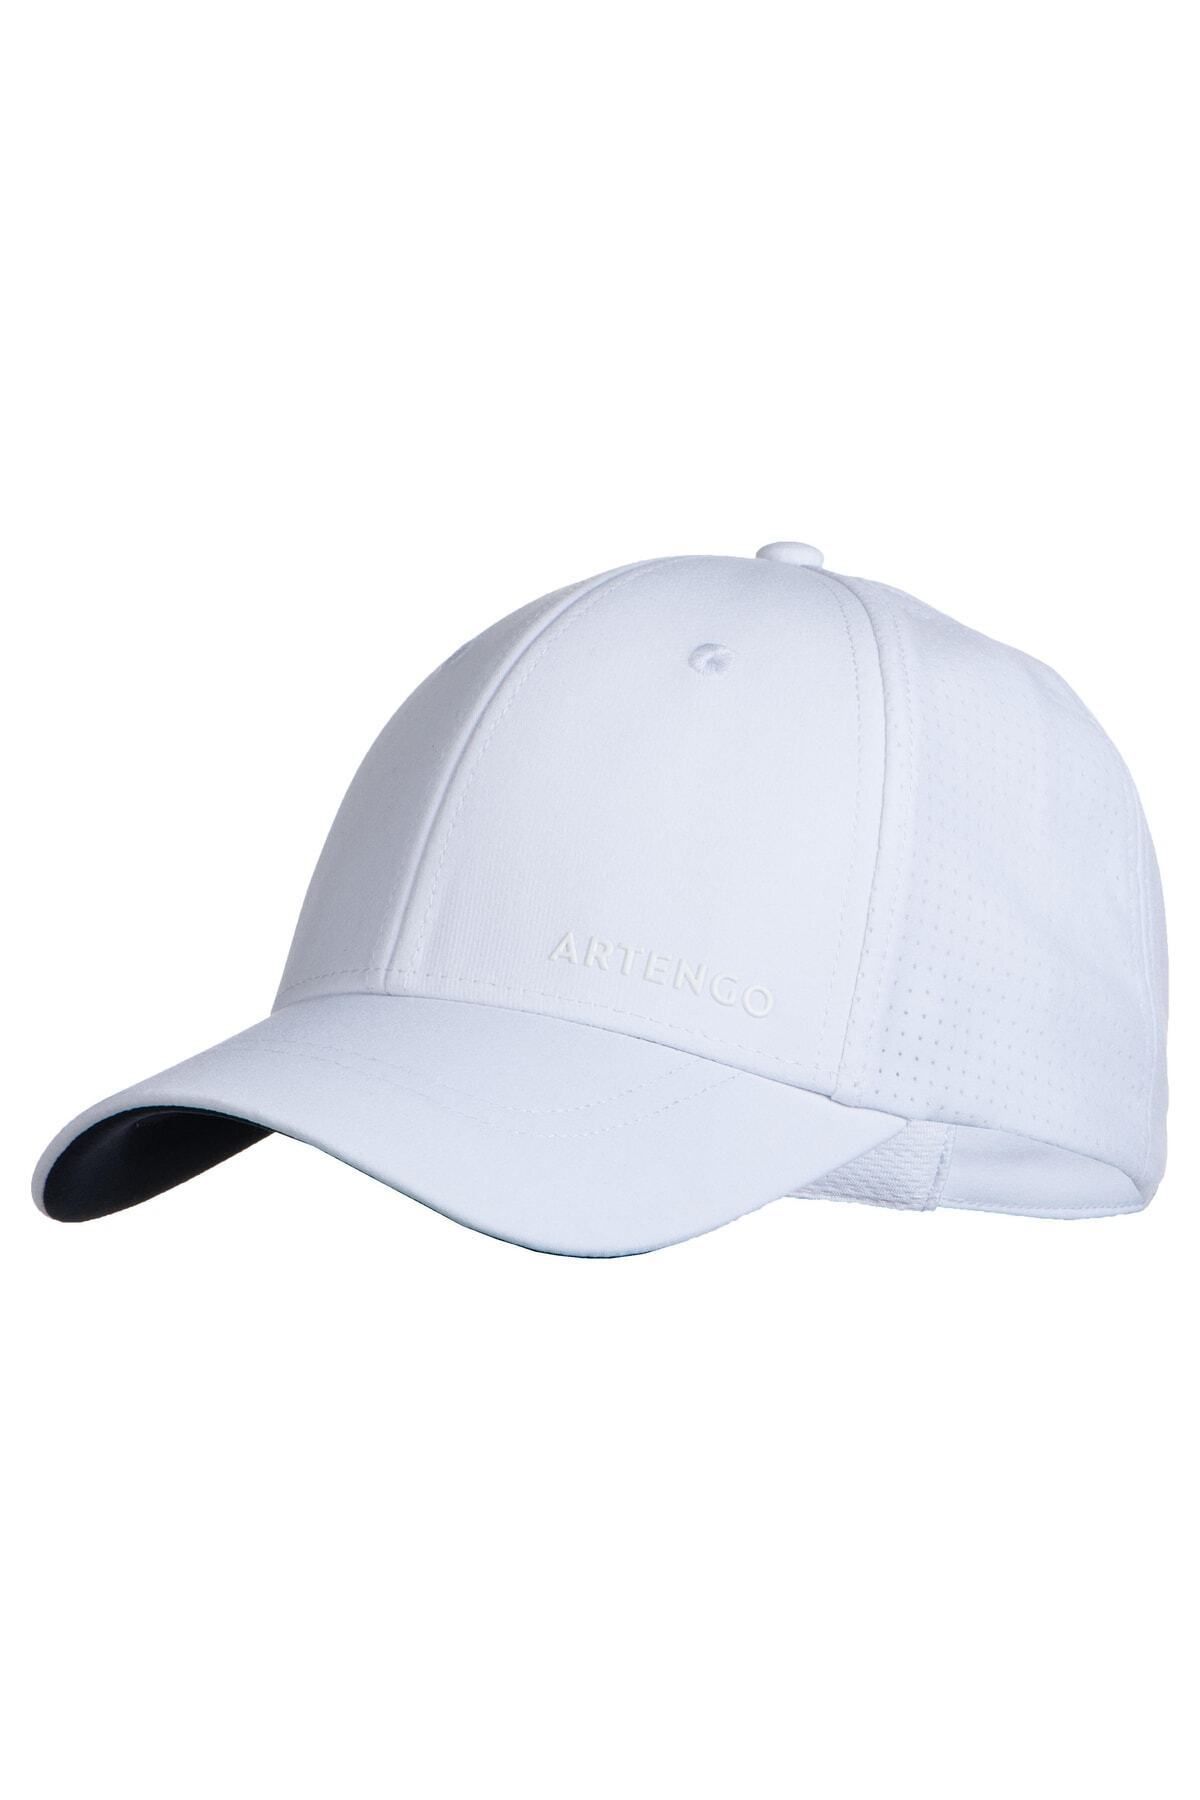 Decathlon Artengo Tenis Şapkası - Beyaz / Lacivert - Tc 900